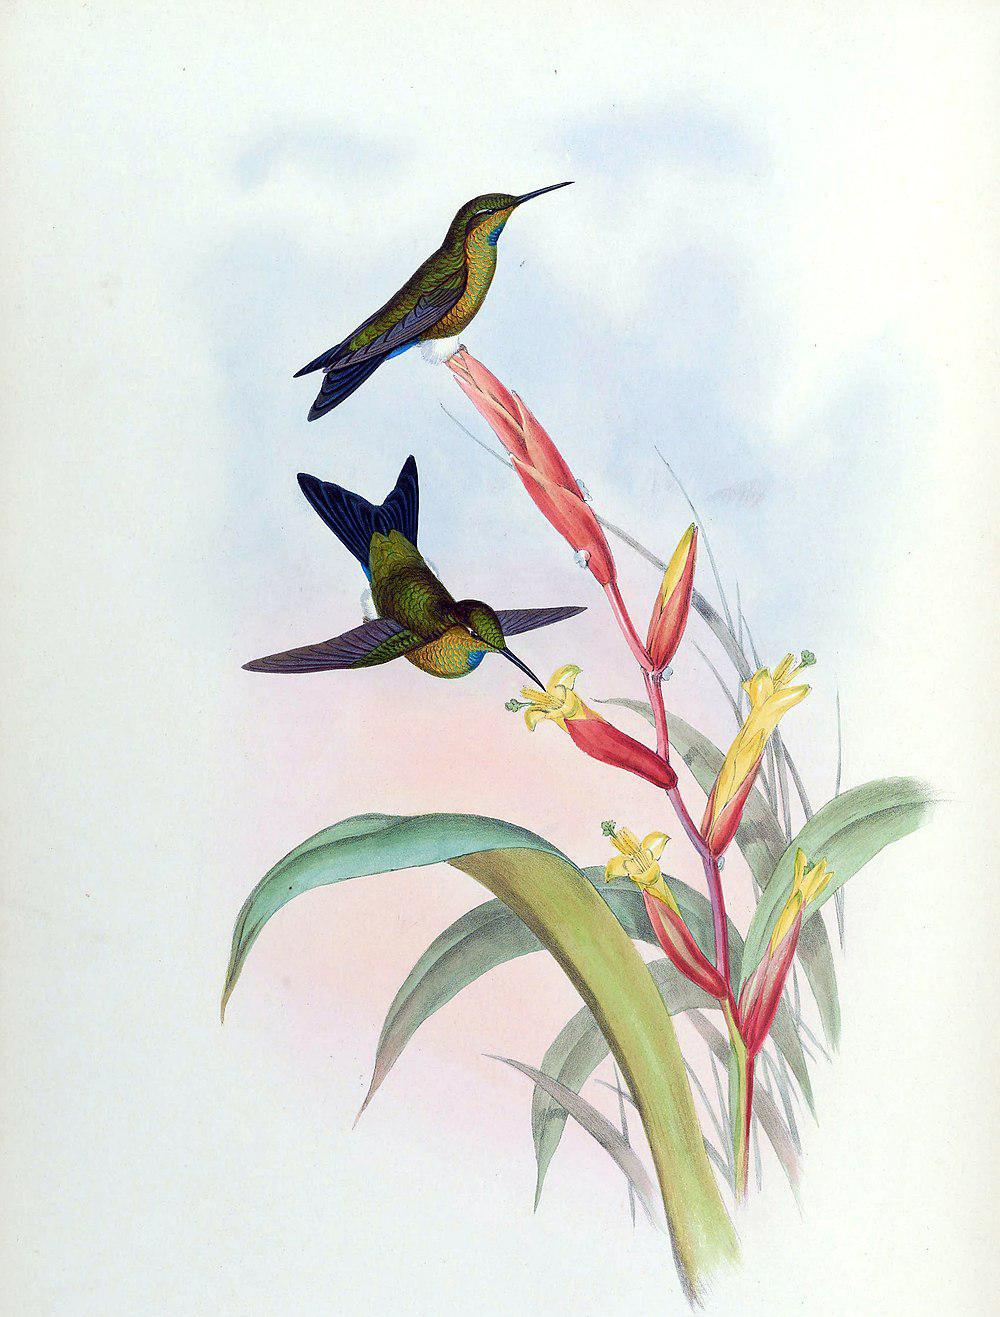 绿喉毛腿蜂鸟 / Turquoise-throated Puffleg / Eriocnemis godini